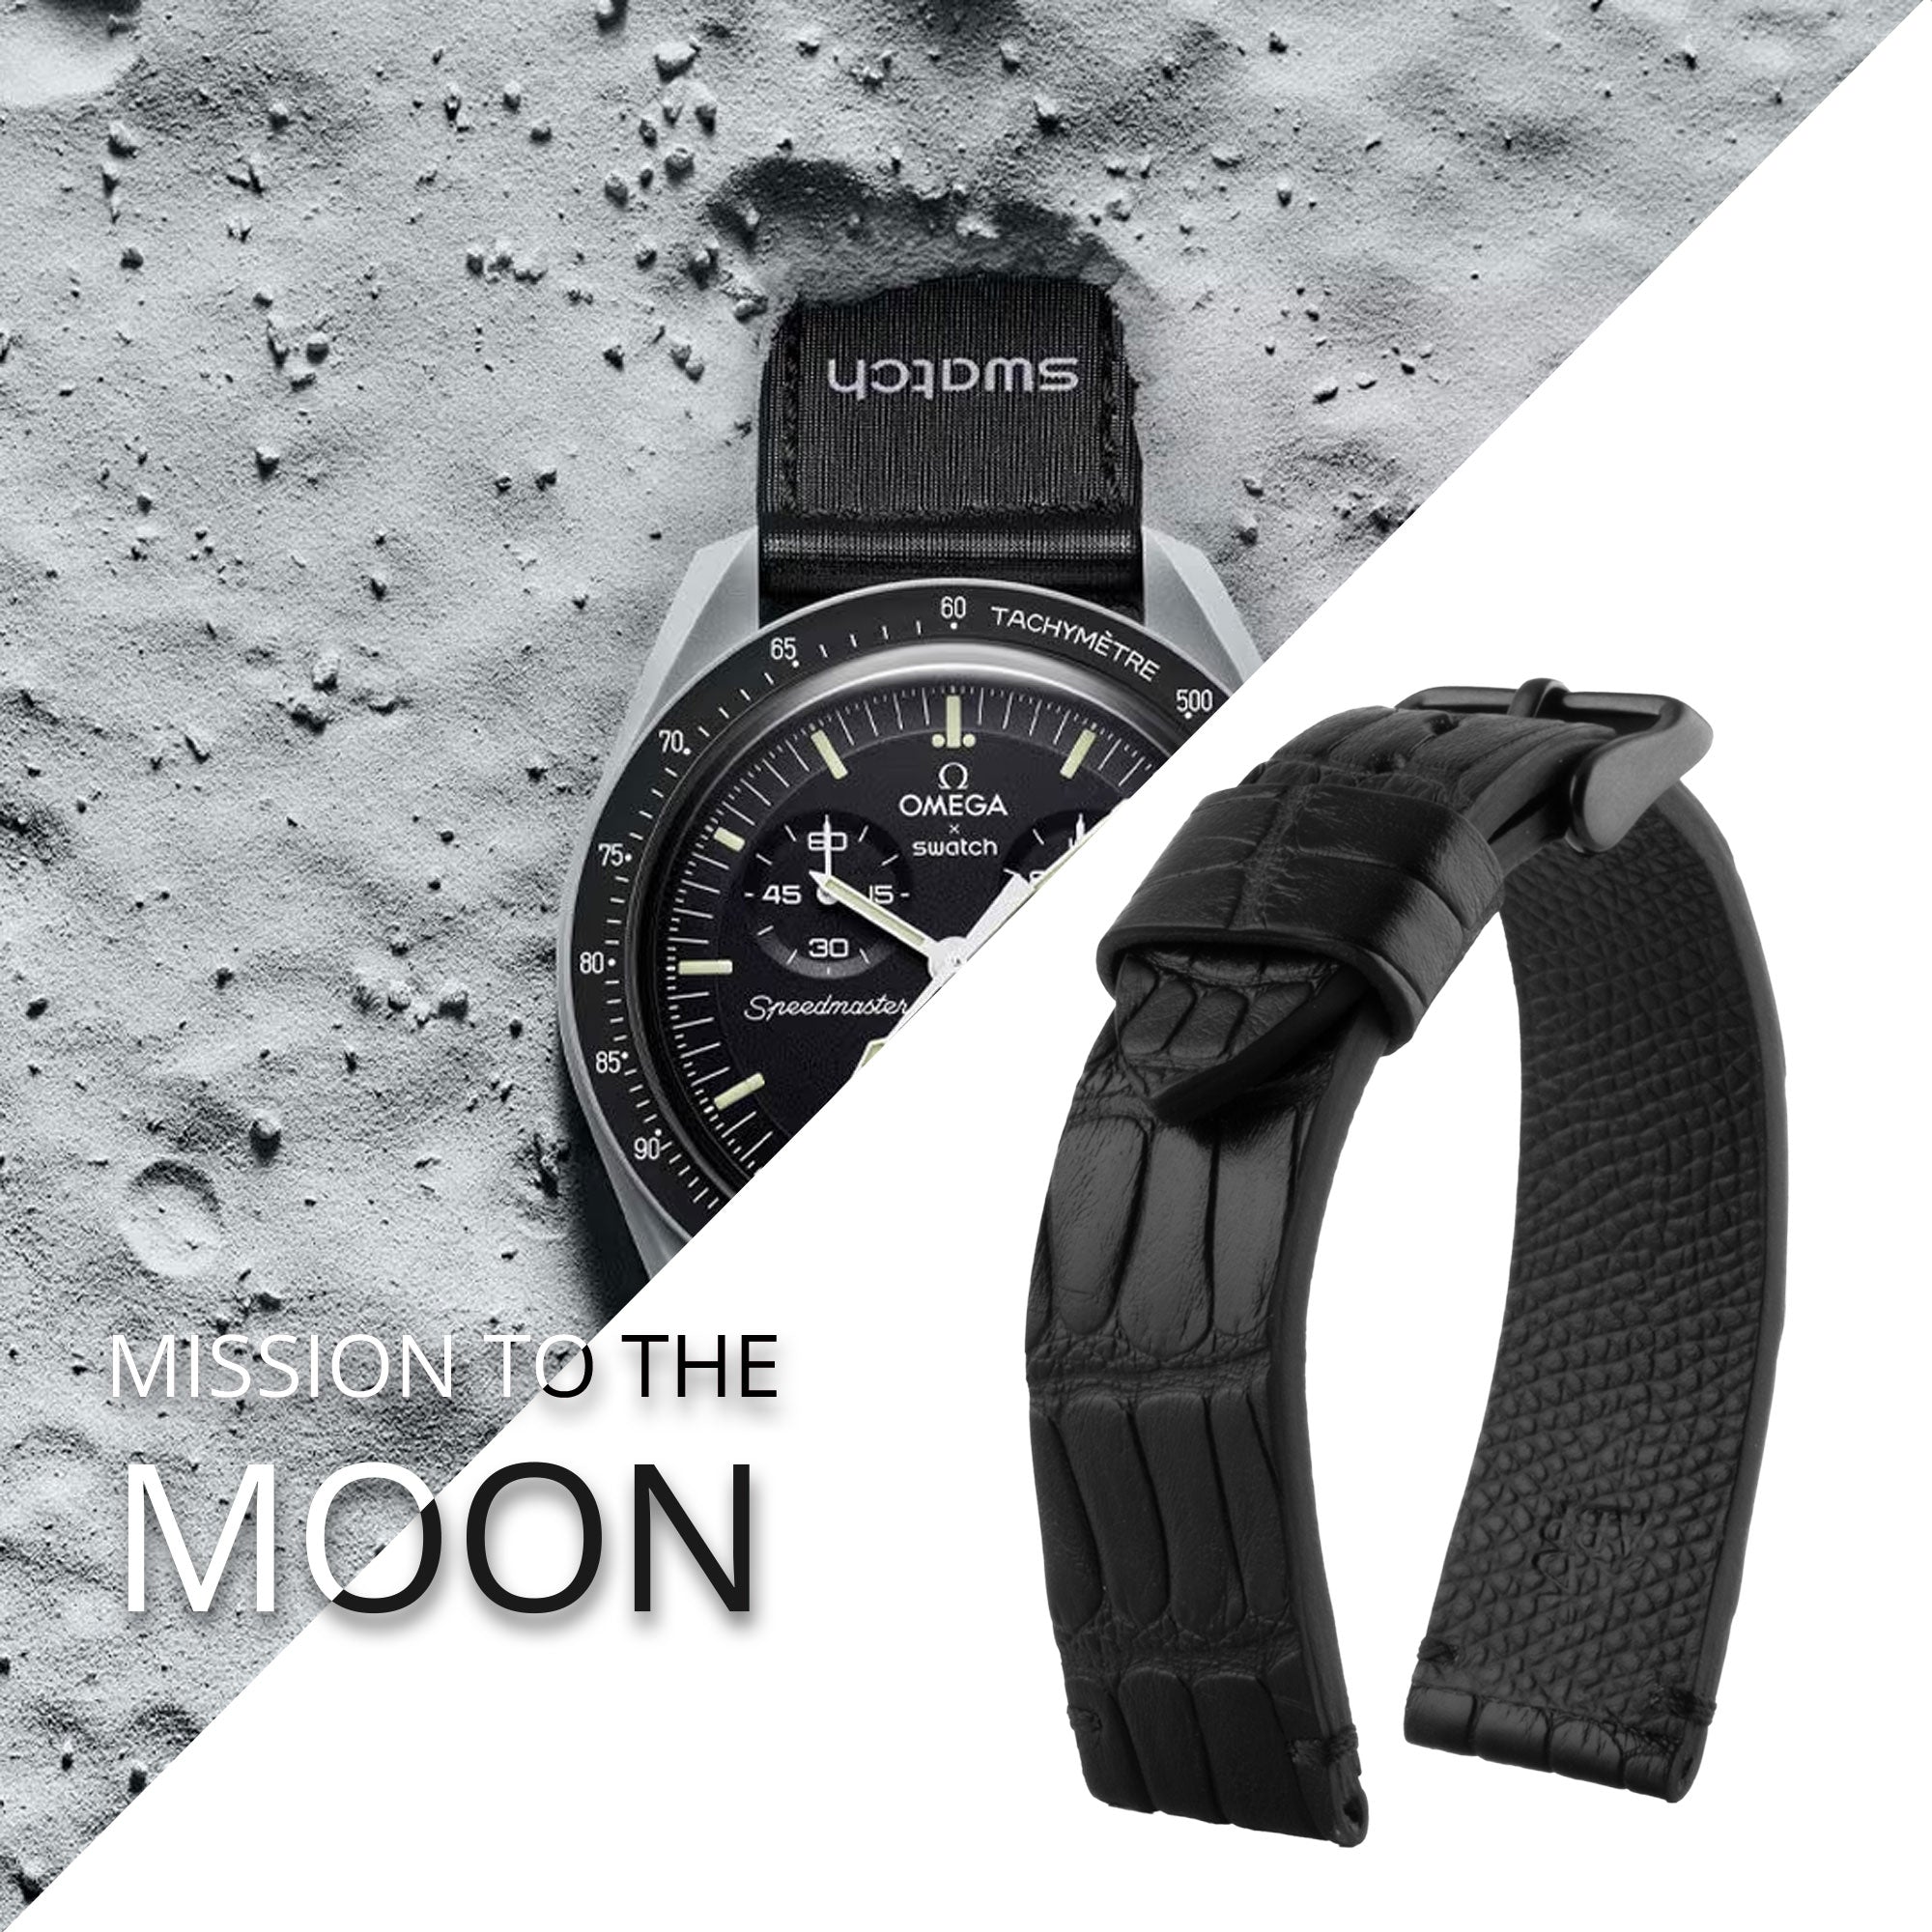 Tribute to MoonSwatch Omega X Swatch - Bracelet de montre cuir "Mission to..." - Alligator couture contrastée (noir, bleu, rouge...)